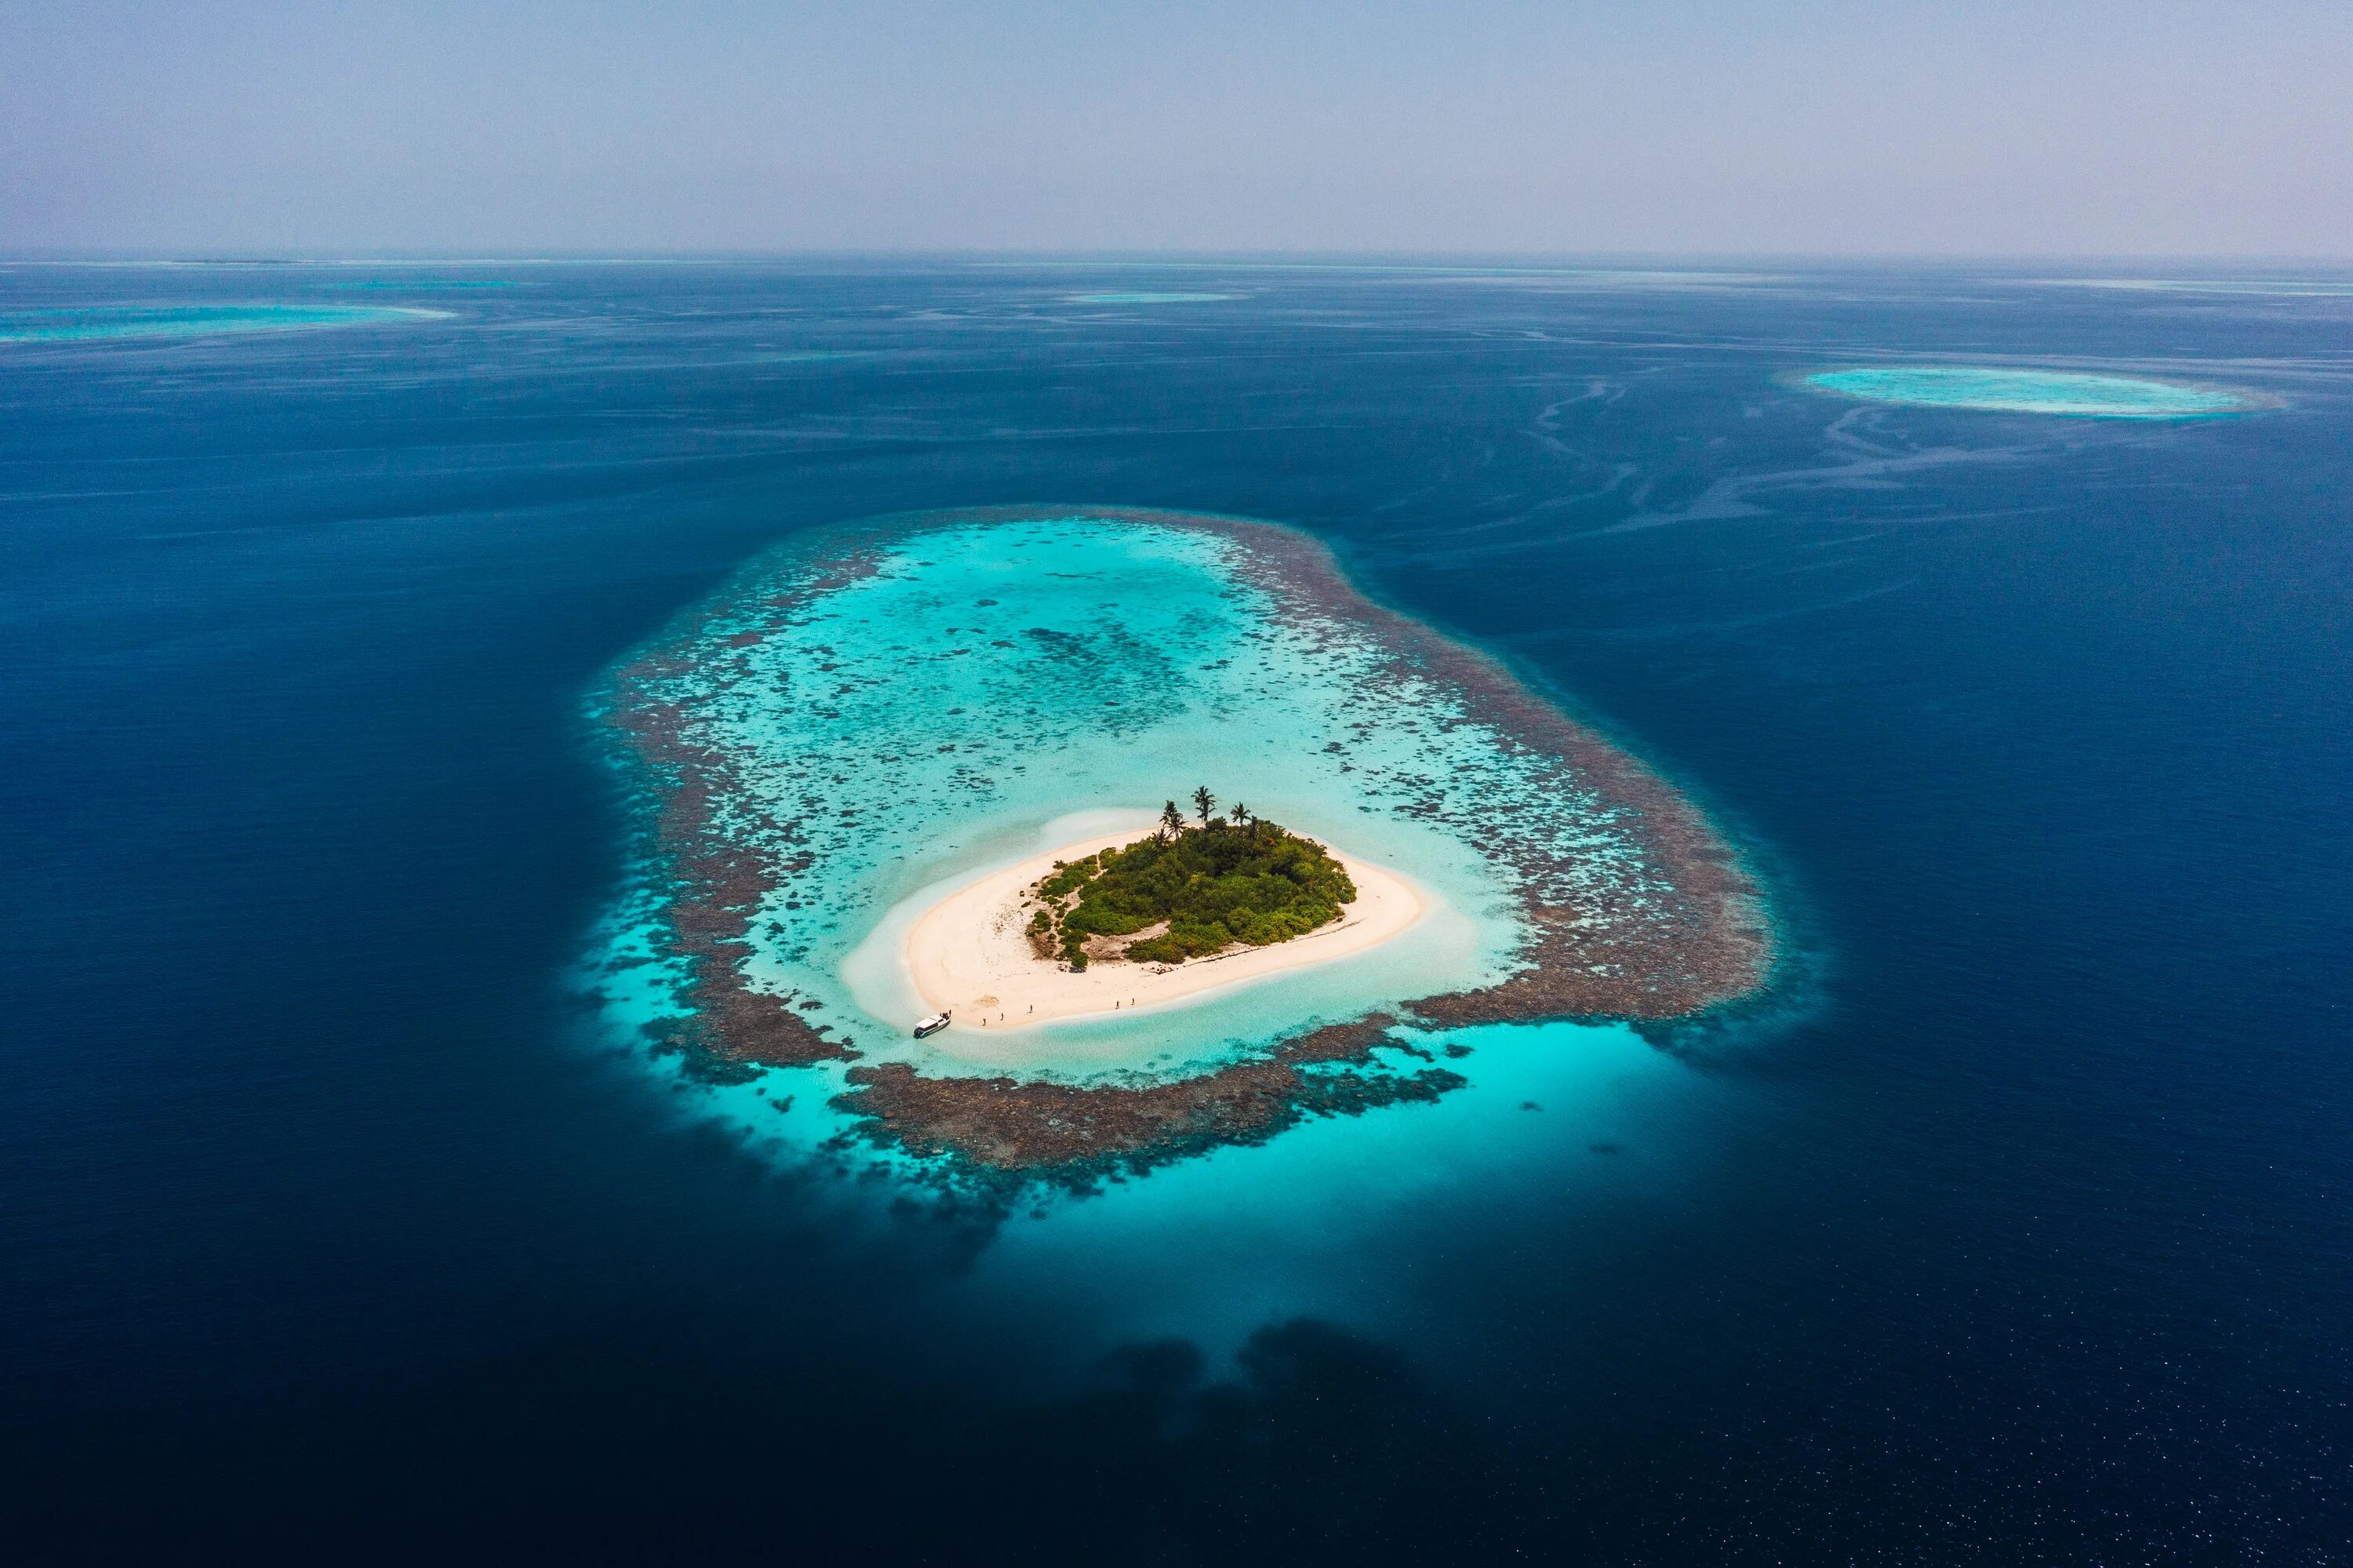 Remote island. Атоллы Океании. Архипелаг Туамоту. Атолл в тихом океане. Атоллы Мальдив.